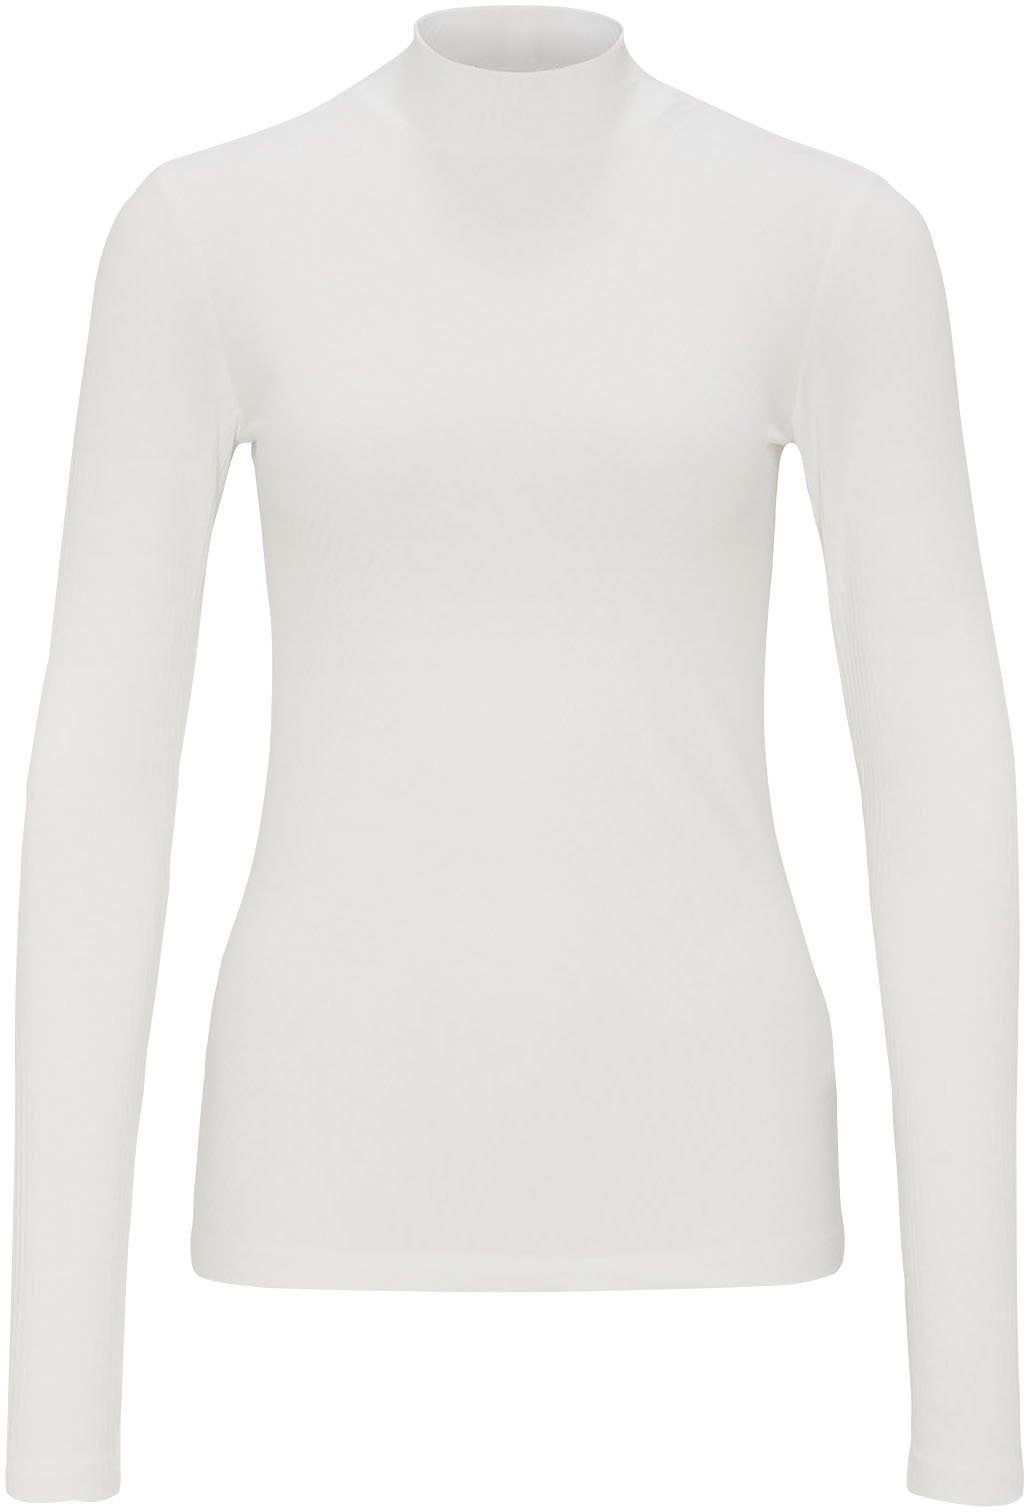 Weiße OPUS Shirts für Damen online kaufen | OTTO